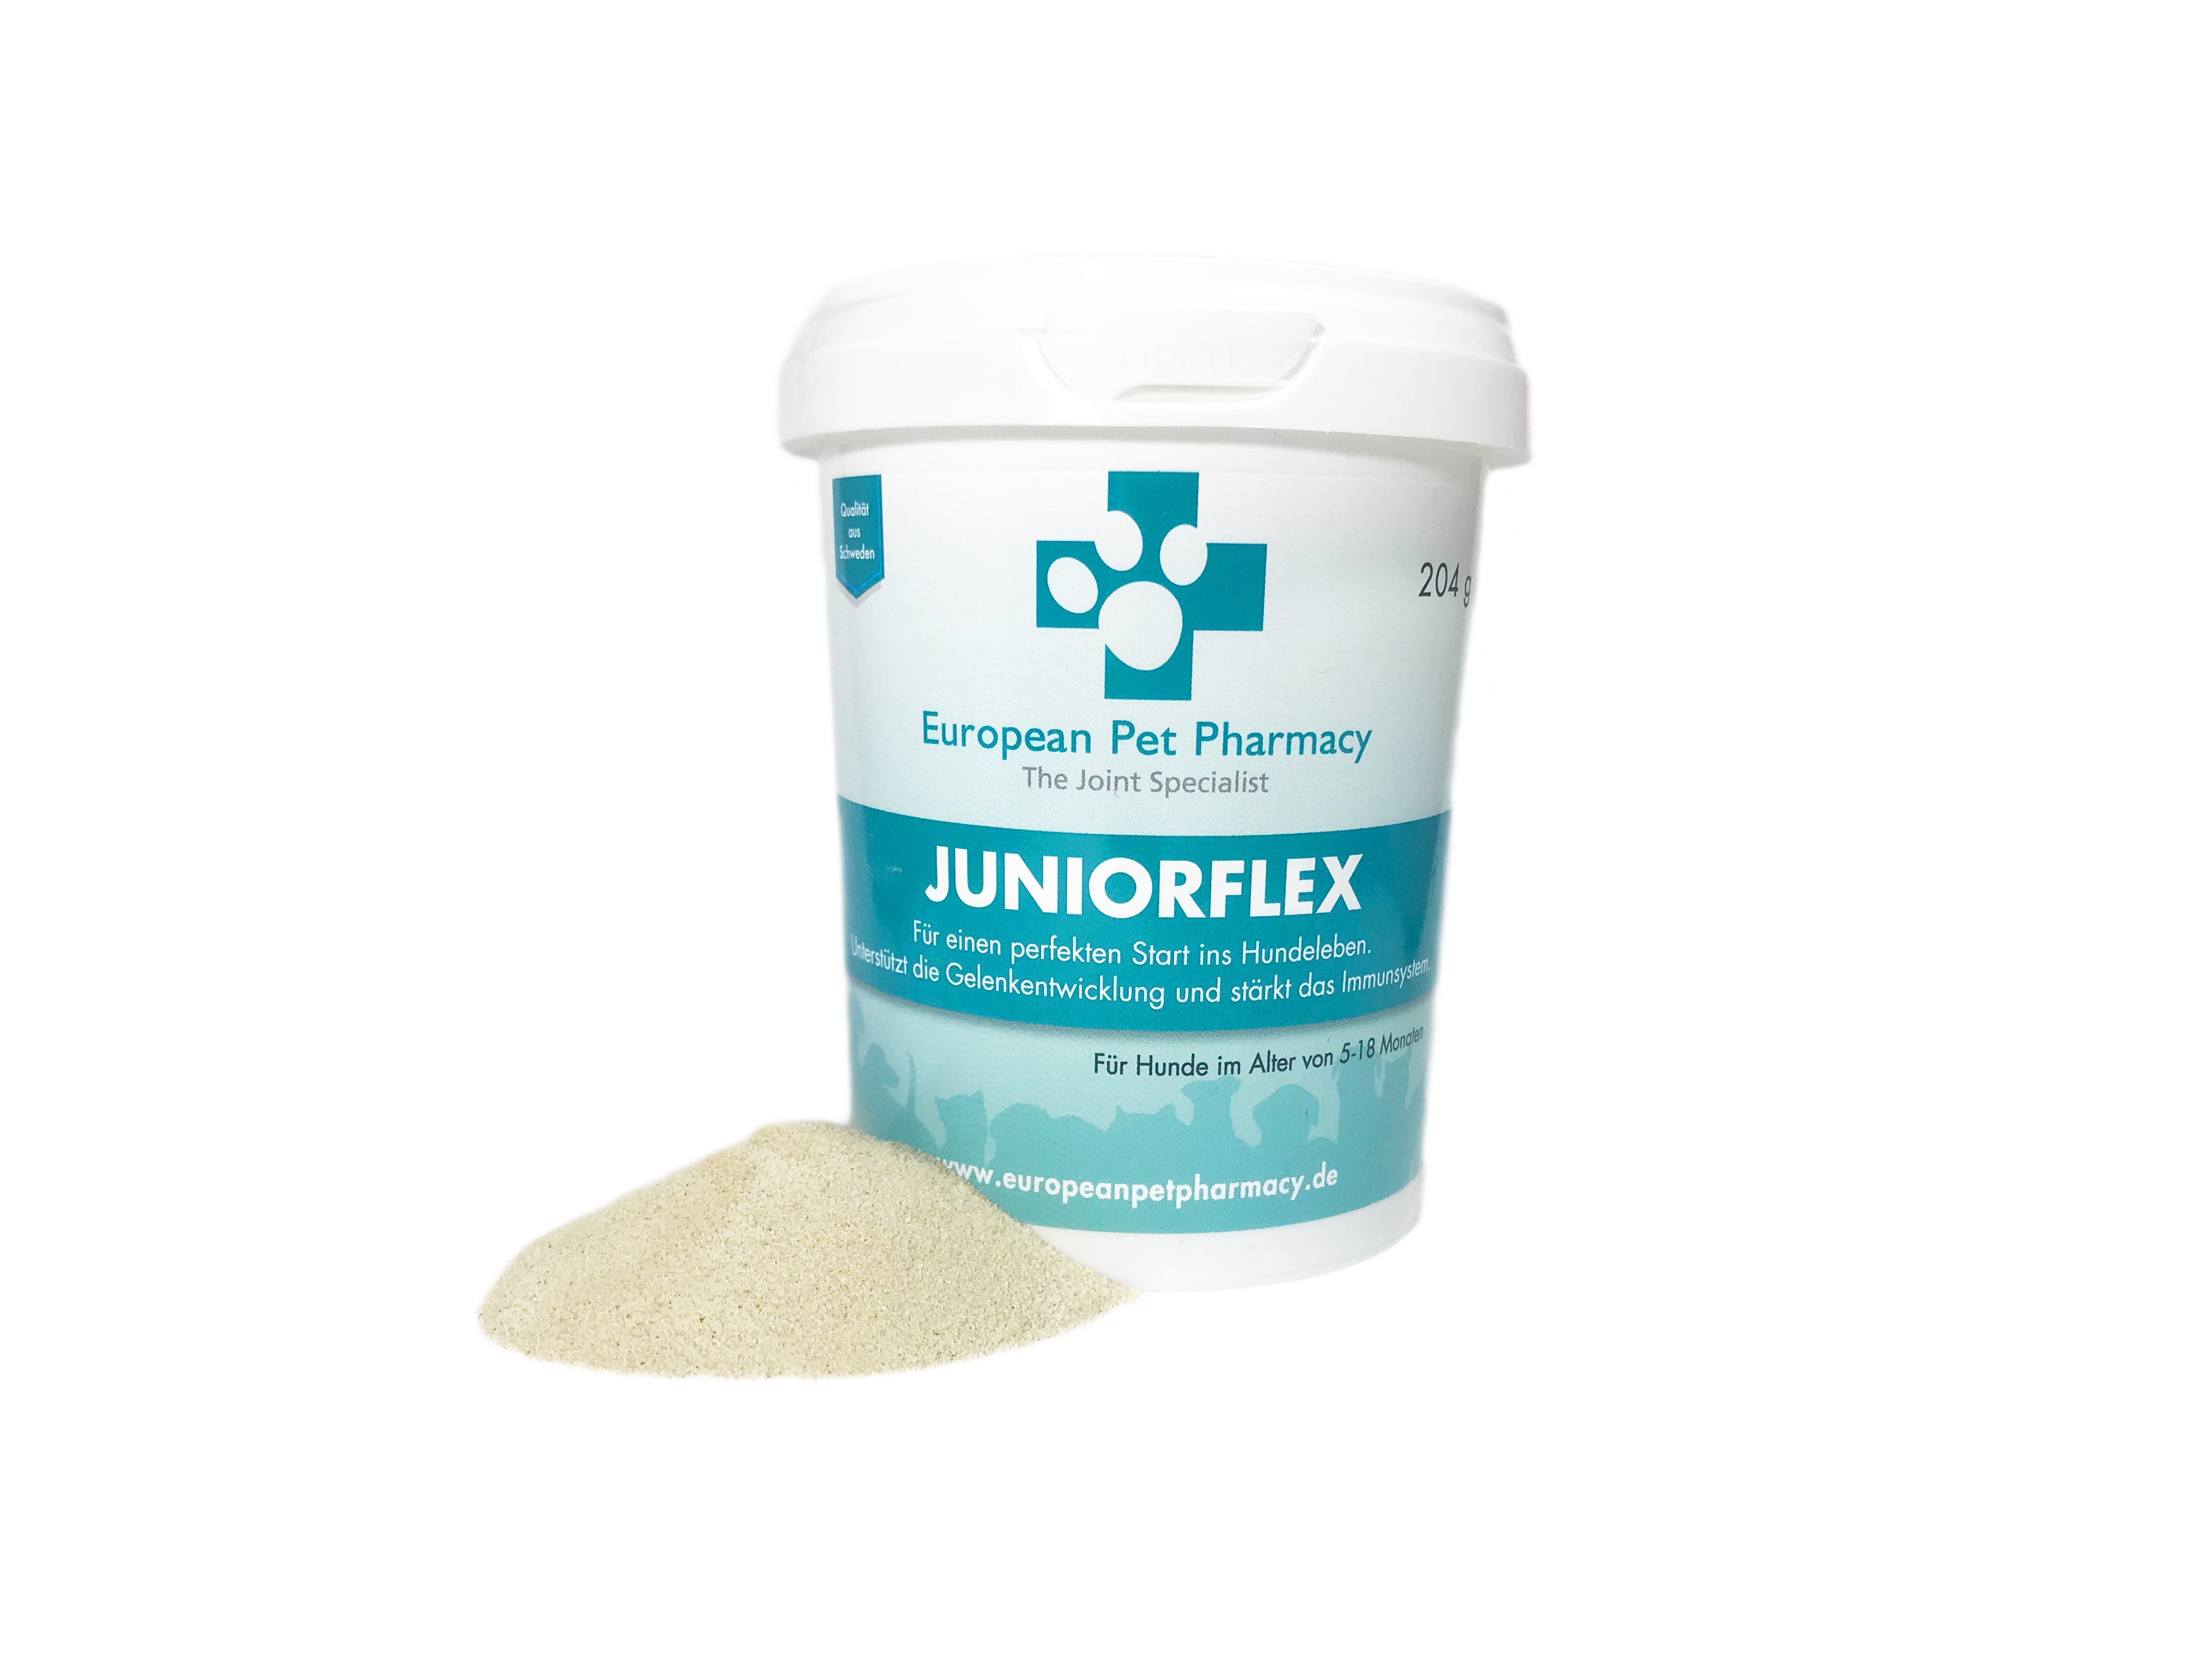 Juniorflex